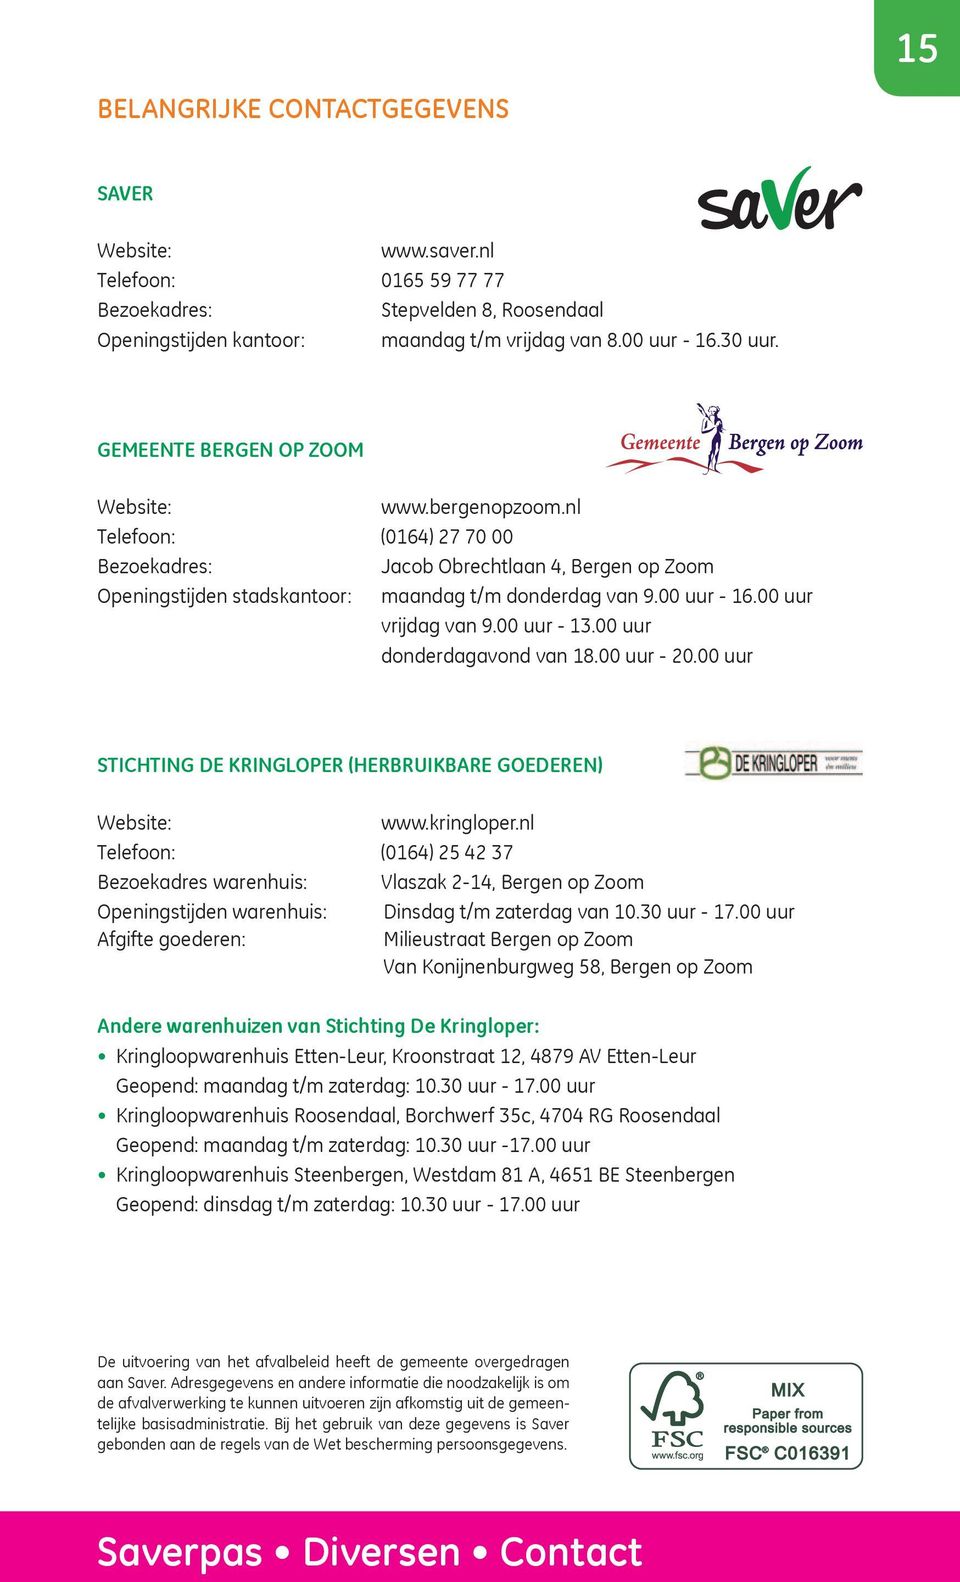 00 uur vrijdag van 9.00 uur - 13.00 uur donderdagavond van 18.00 uur - 20.00 uur Stichting de Kringloper (herbruikbare goederen) Website: www.kringloper.